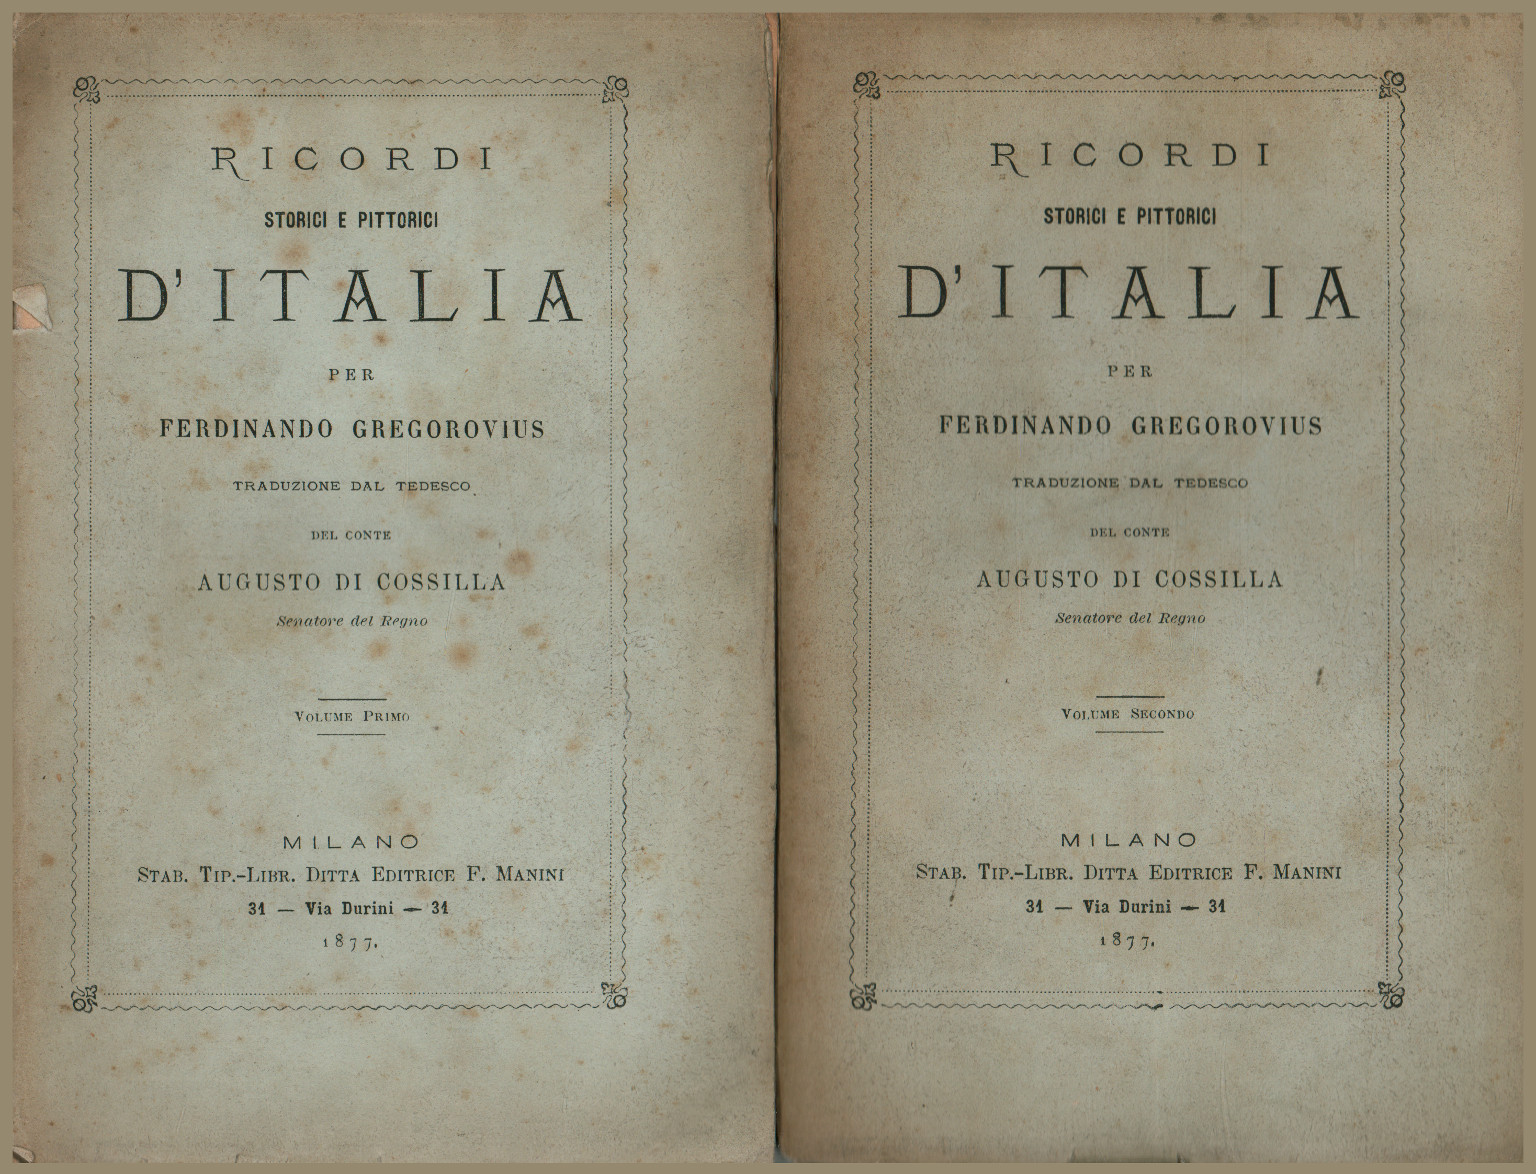 Mémoires historiques et picturales d'Italie (2 tomes), s.a.